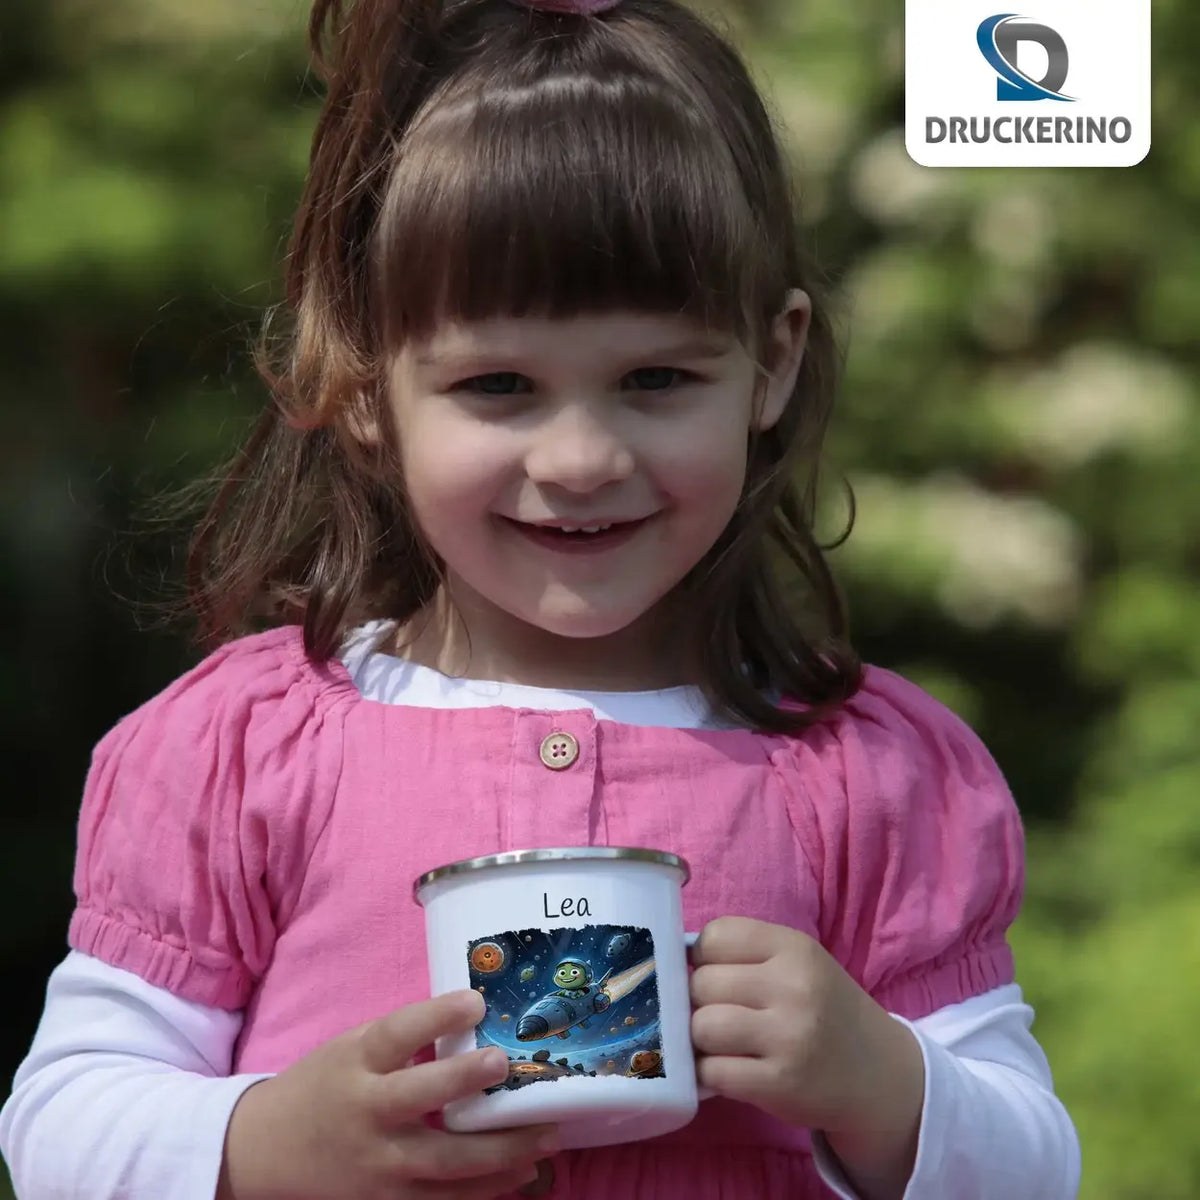 Weltraumabenteuer-Emaille Tasse für Kinder personalisiert Emailletasse Druckerino   